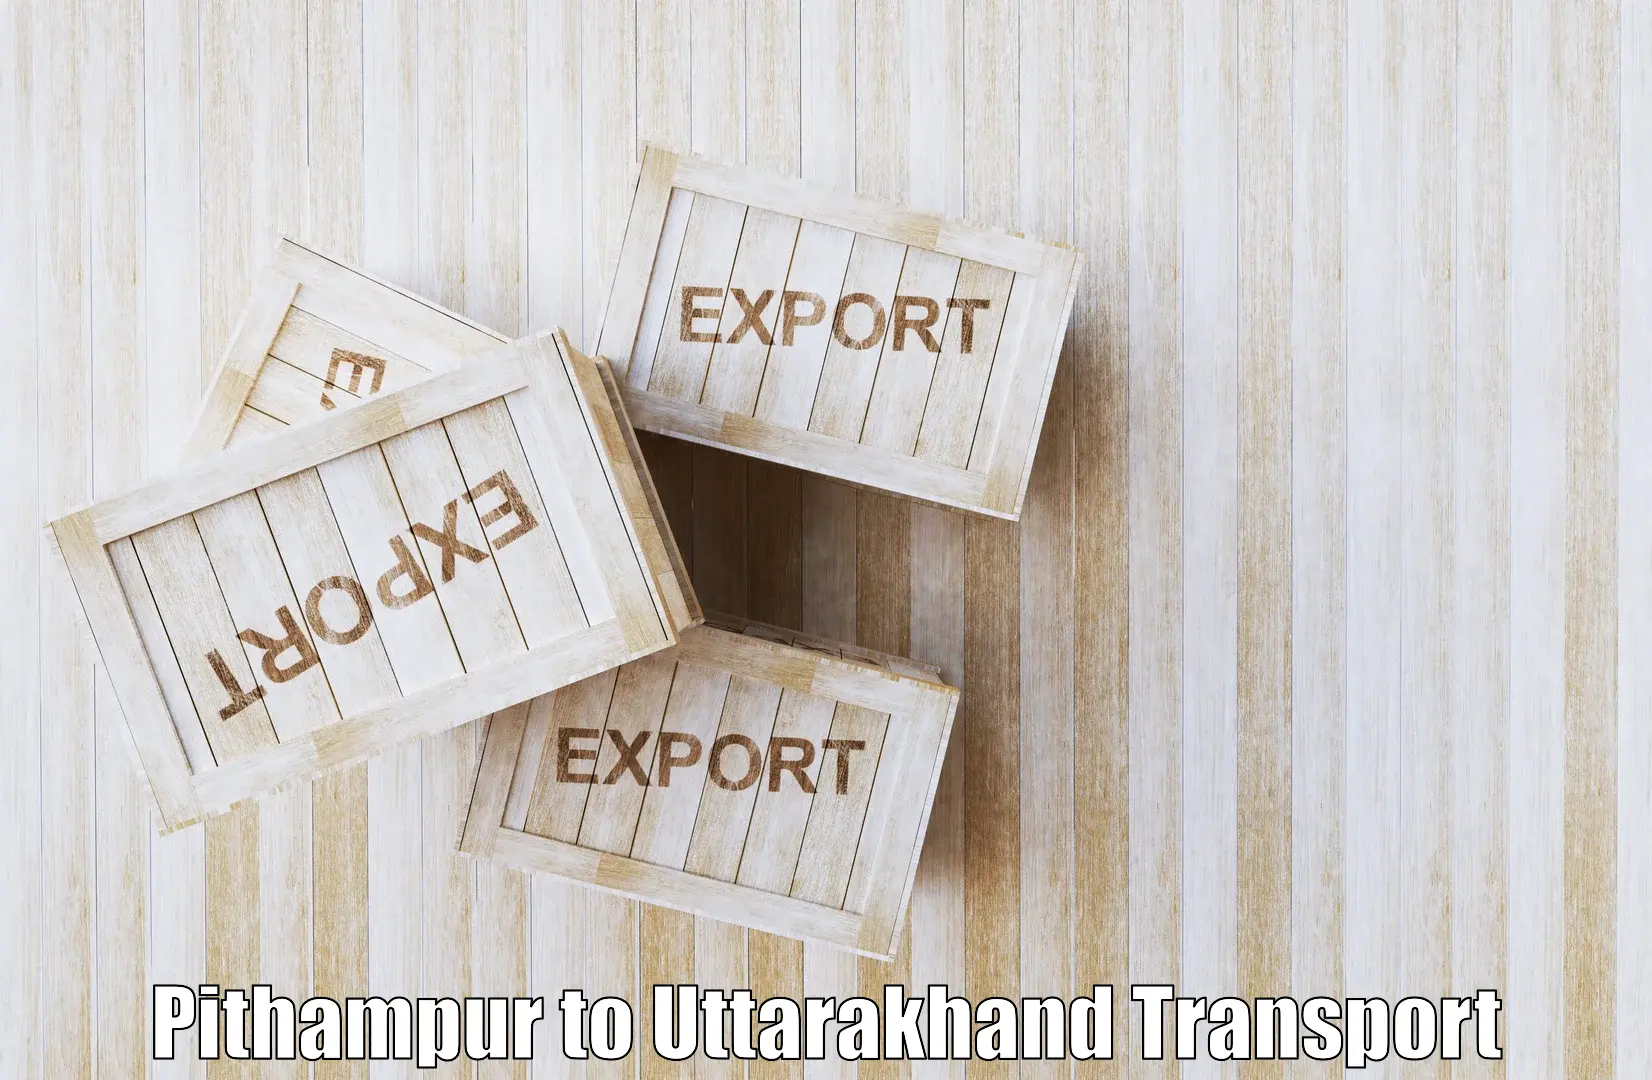 Interstate goods transport Pithampur to Tehri Garhwal